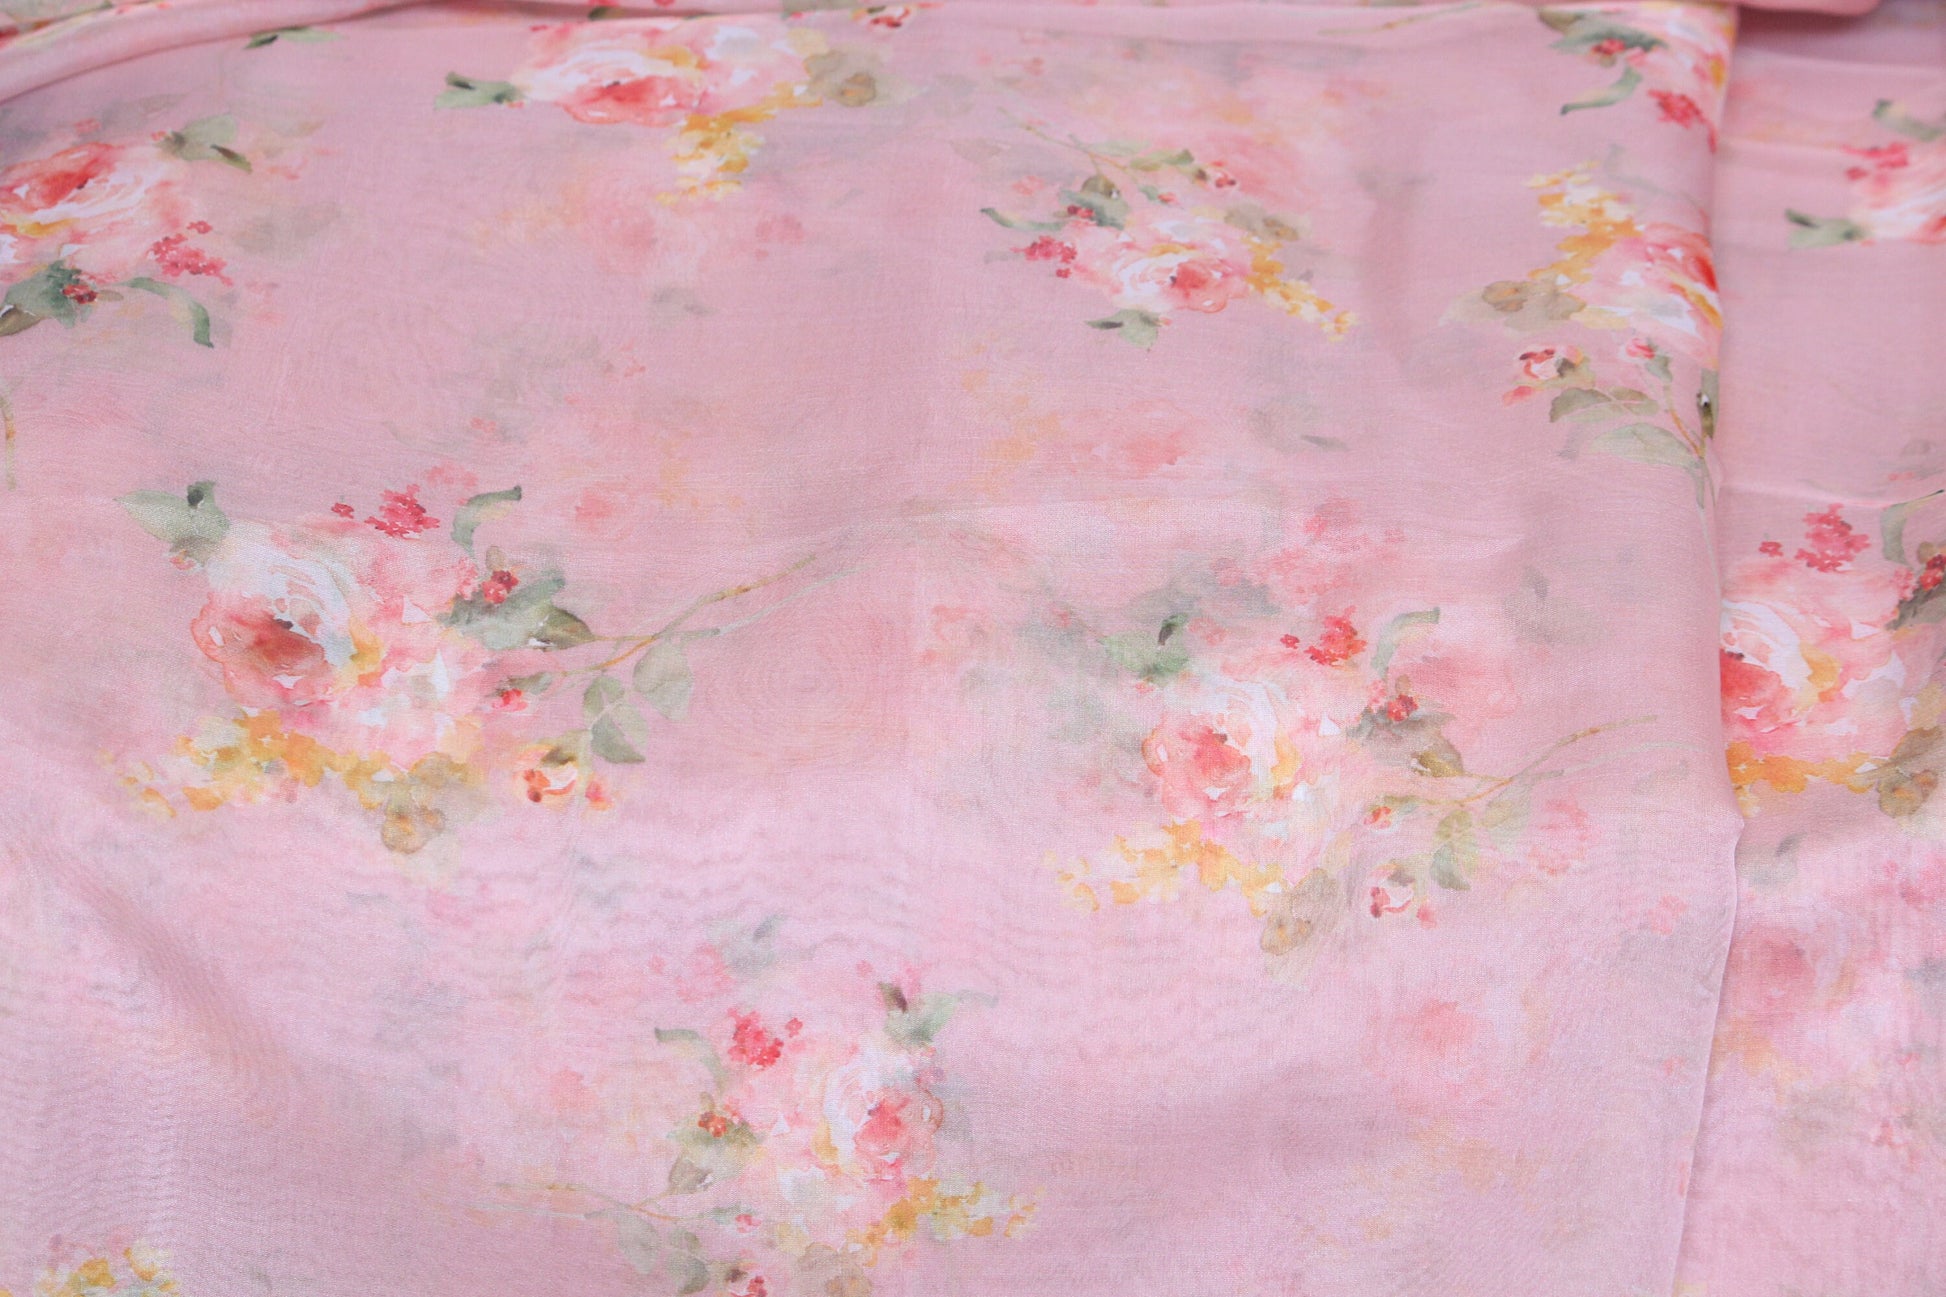 Mirror Organza - Fabric by the yard - 430 Peach - Prestige Linens